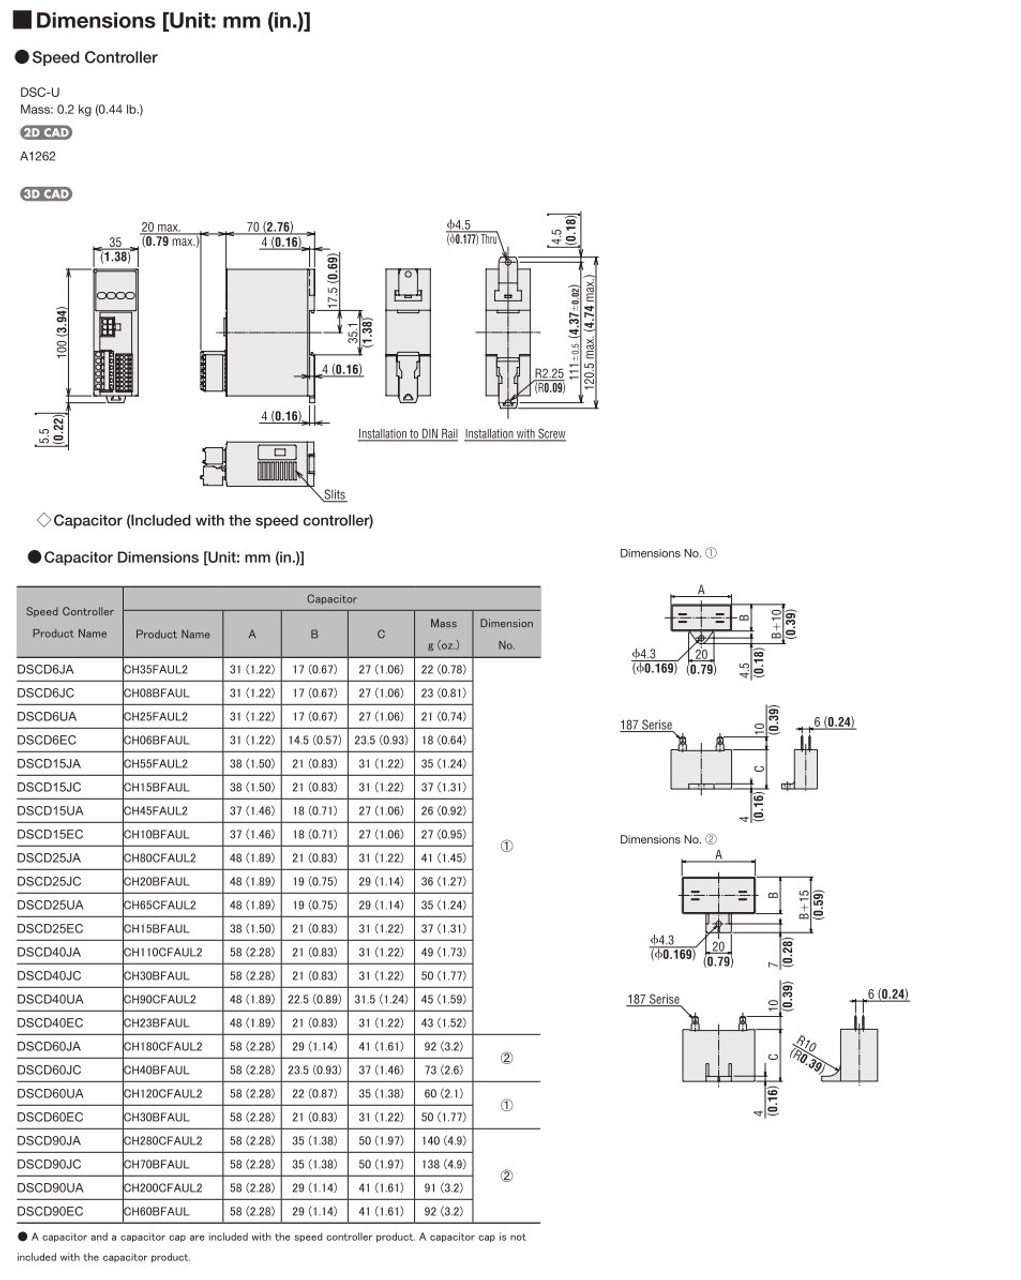 SCM315A-EC / DSCD15EC - Dimensions